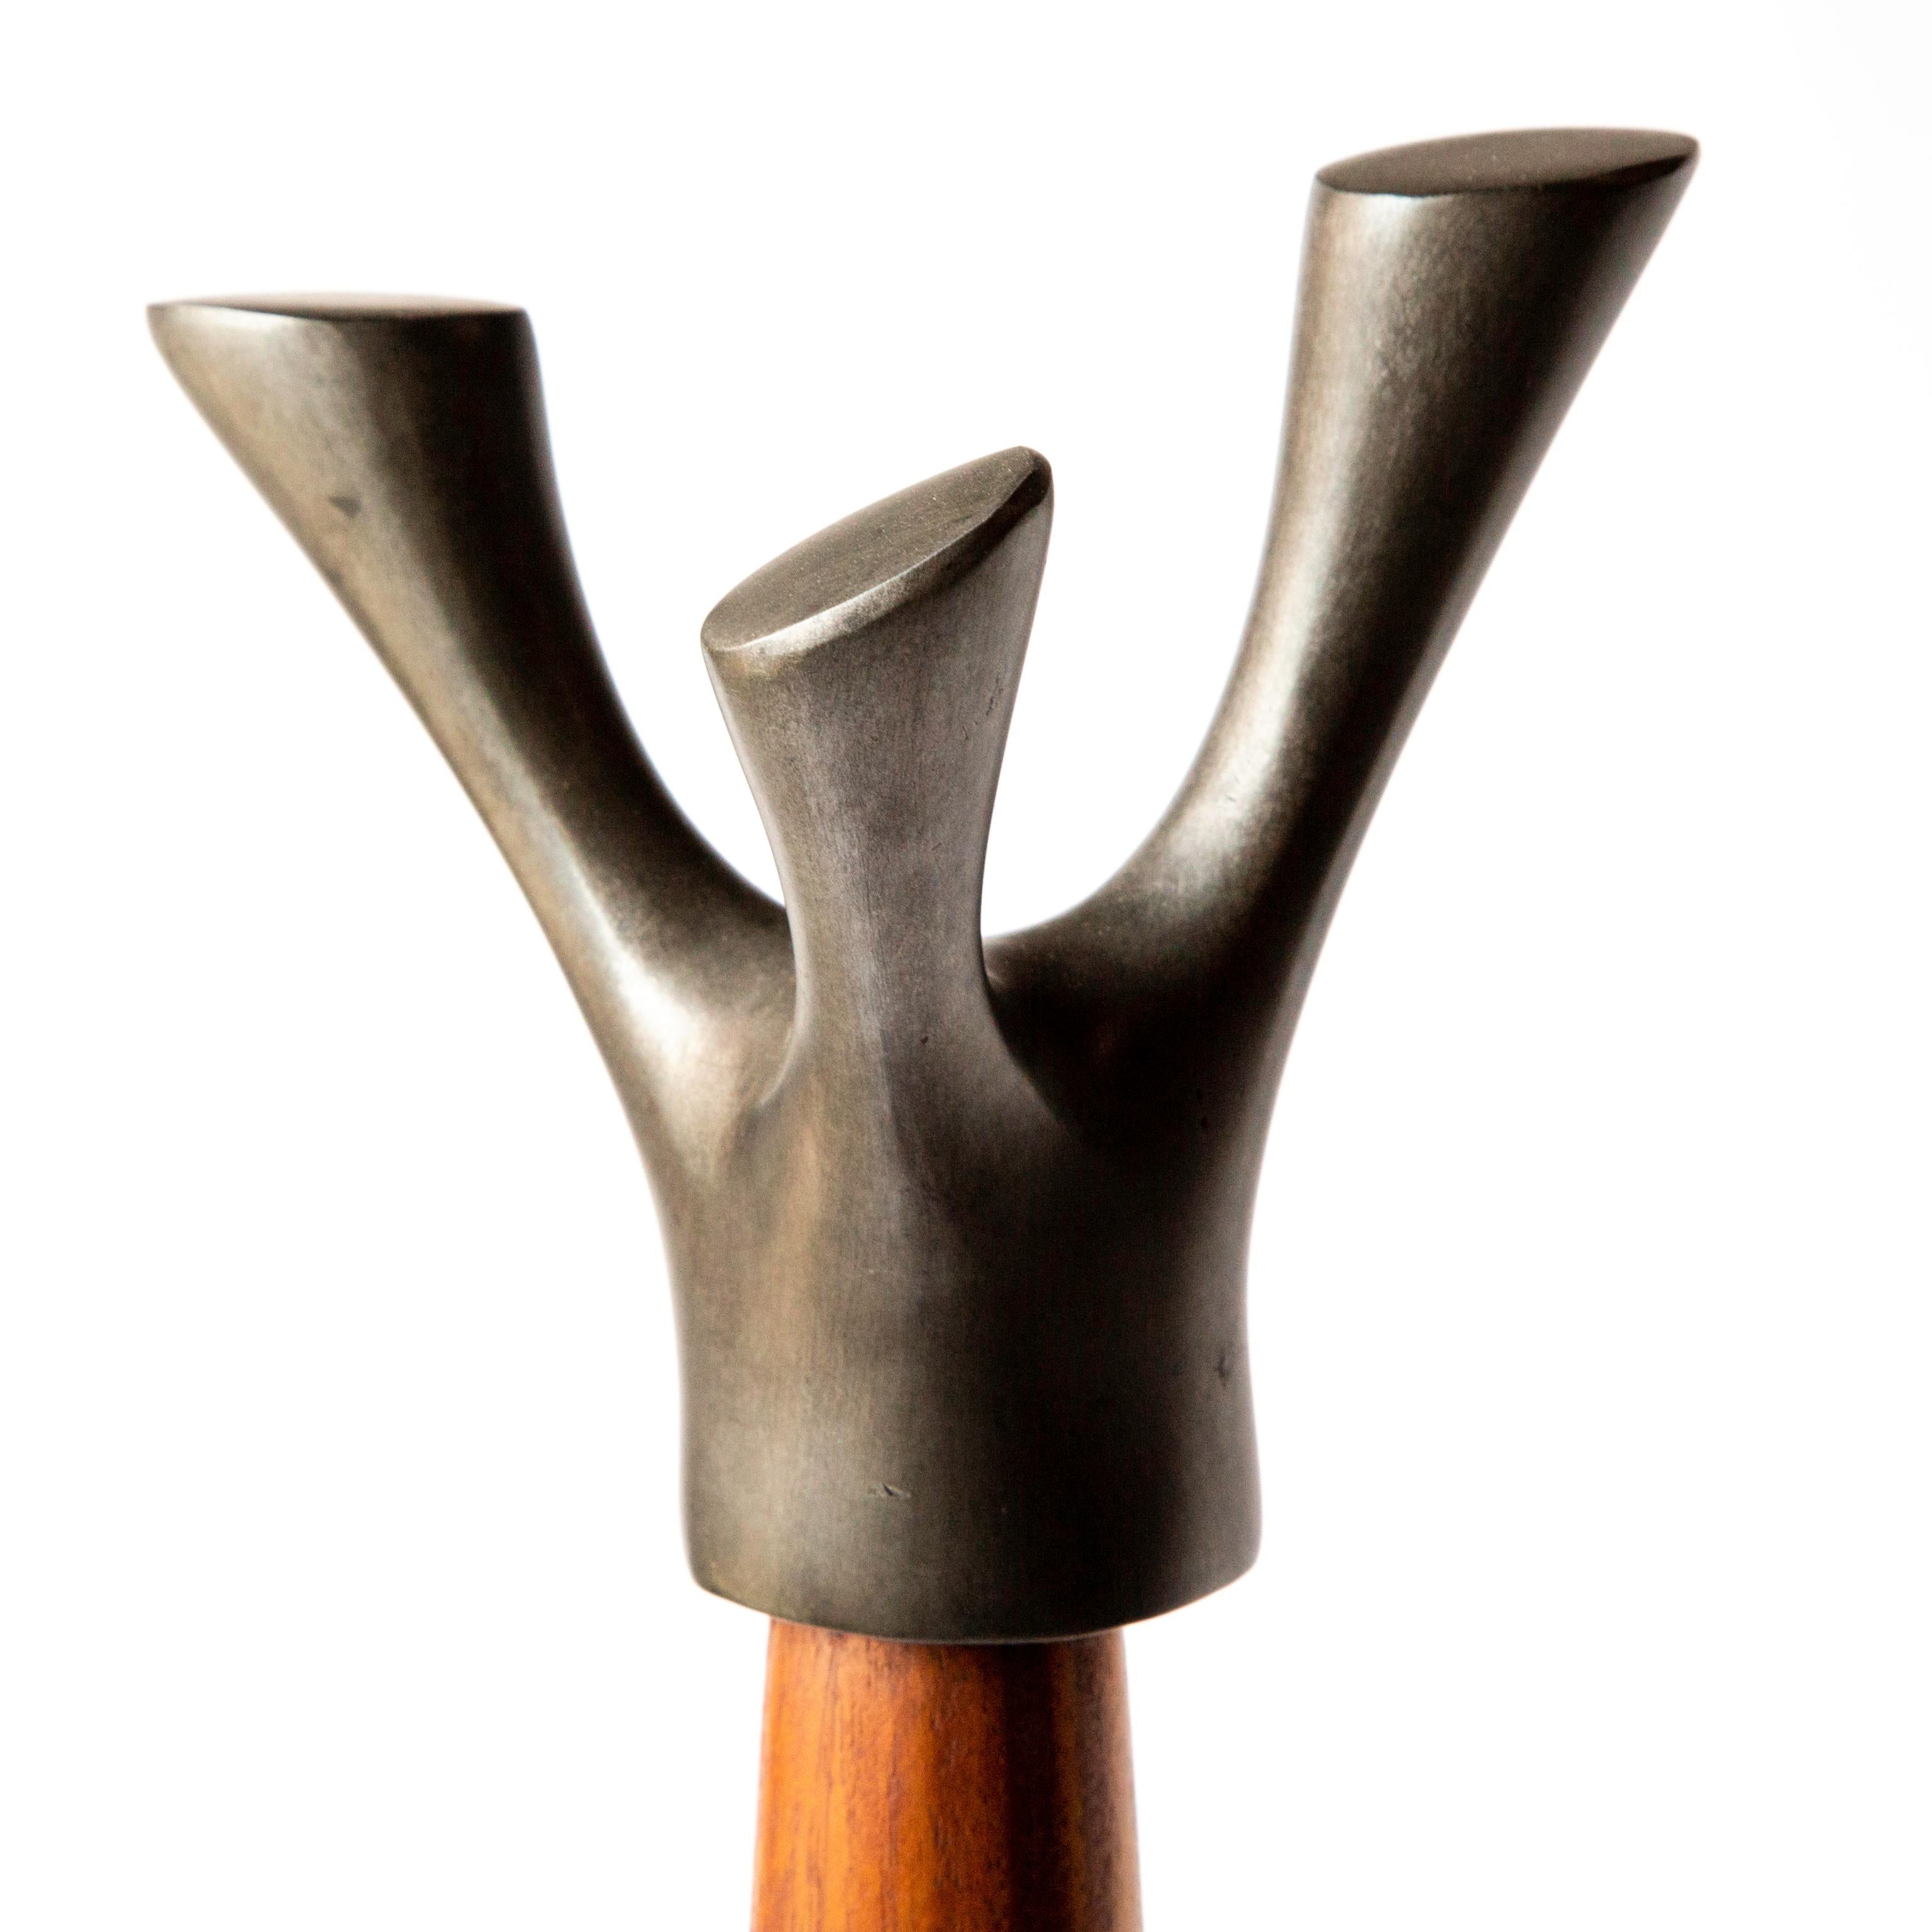 Triple twig coat rack / coat stand, solid mahogany and patinated cast aluminum, Jordan Mozer, USA, 2015.

Measures: 12